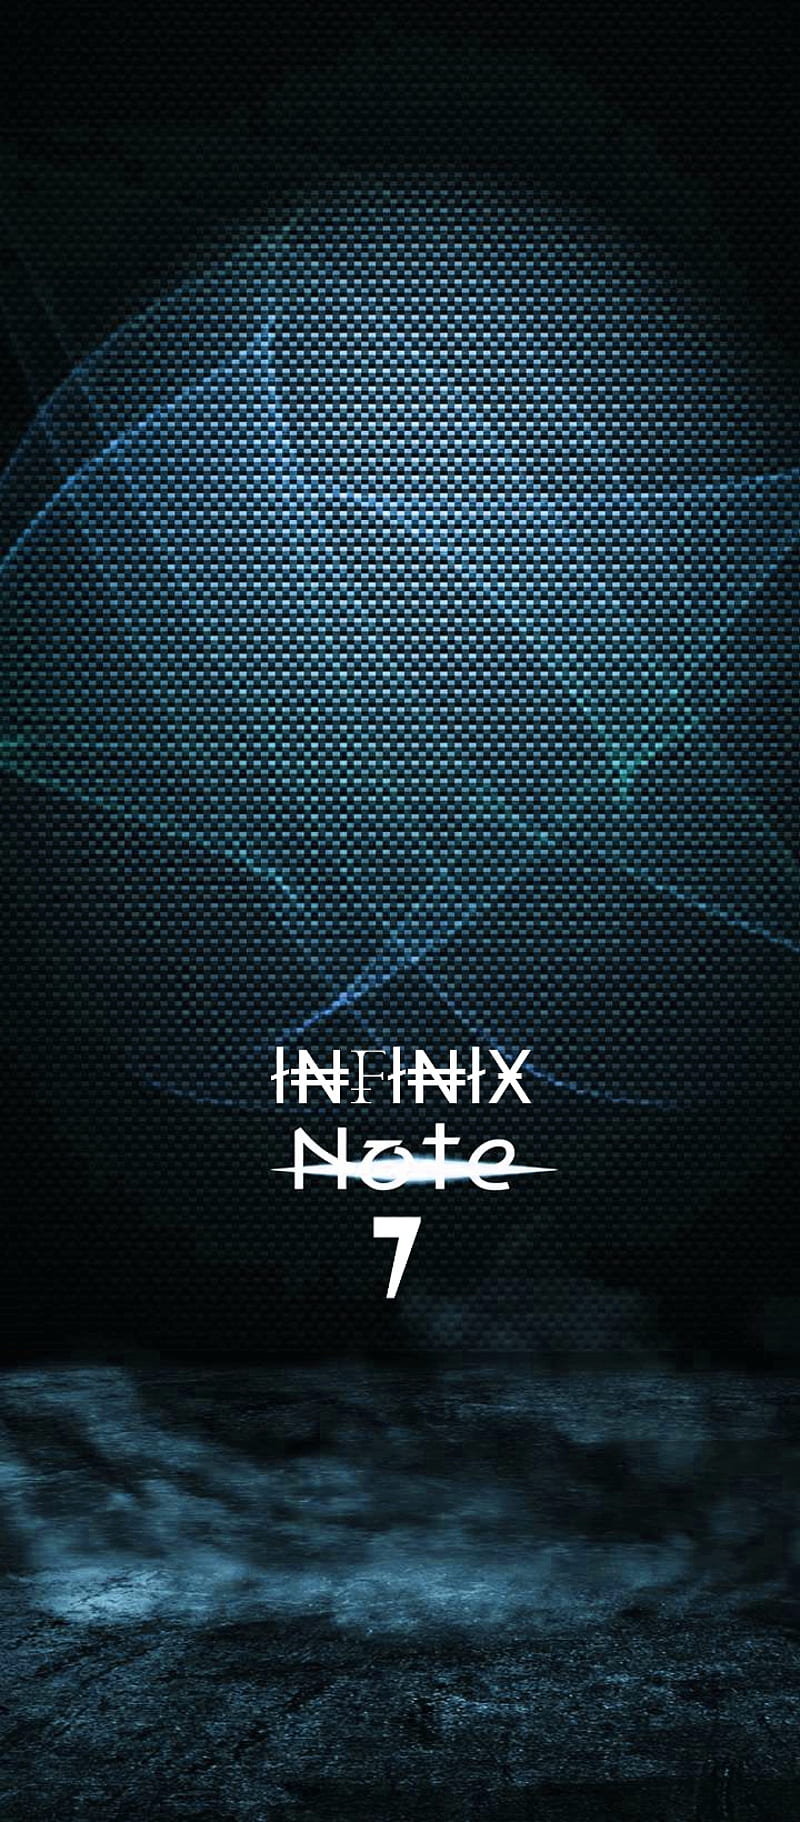 Bạn đang cần tìm một chiếc điện thoại có thiết kế hiện đại, với camera chụp ấn tượng mà giá lại phải chăng? Infinix Note 7 là sự lựa chọn hoàn hảo dành cho bạn! Đừng bỏ lỡ hình ảnh sản phẩm và khám phá thêm những tính năng tuyệt vời của chiếc điện thoại này.